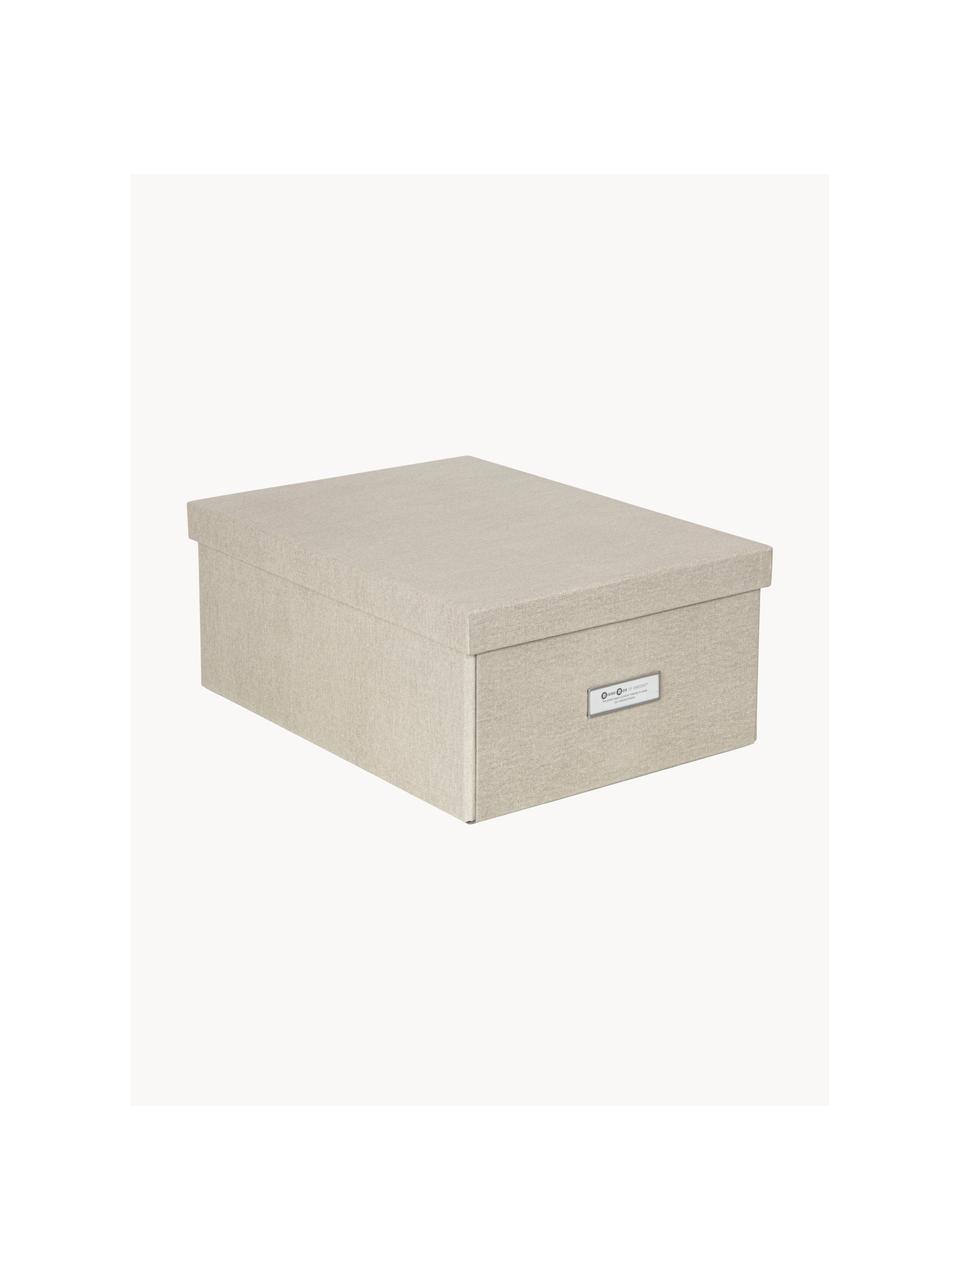 Skládací skladovací box Karin, 29 x H 39 cm, Plátno, pevný karton, Světle béžová, Š 29 cm, D 39 cm